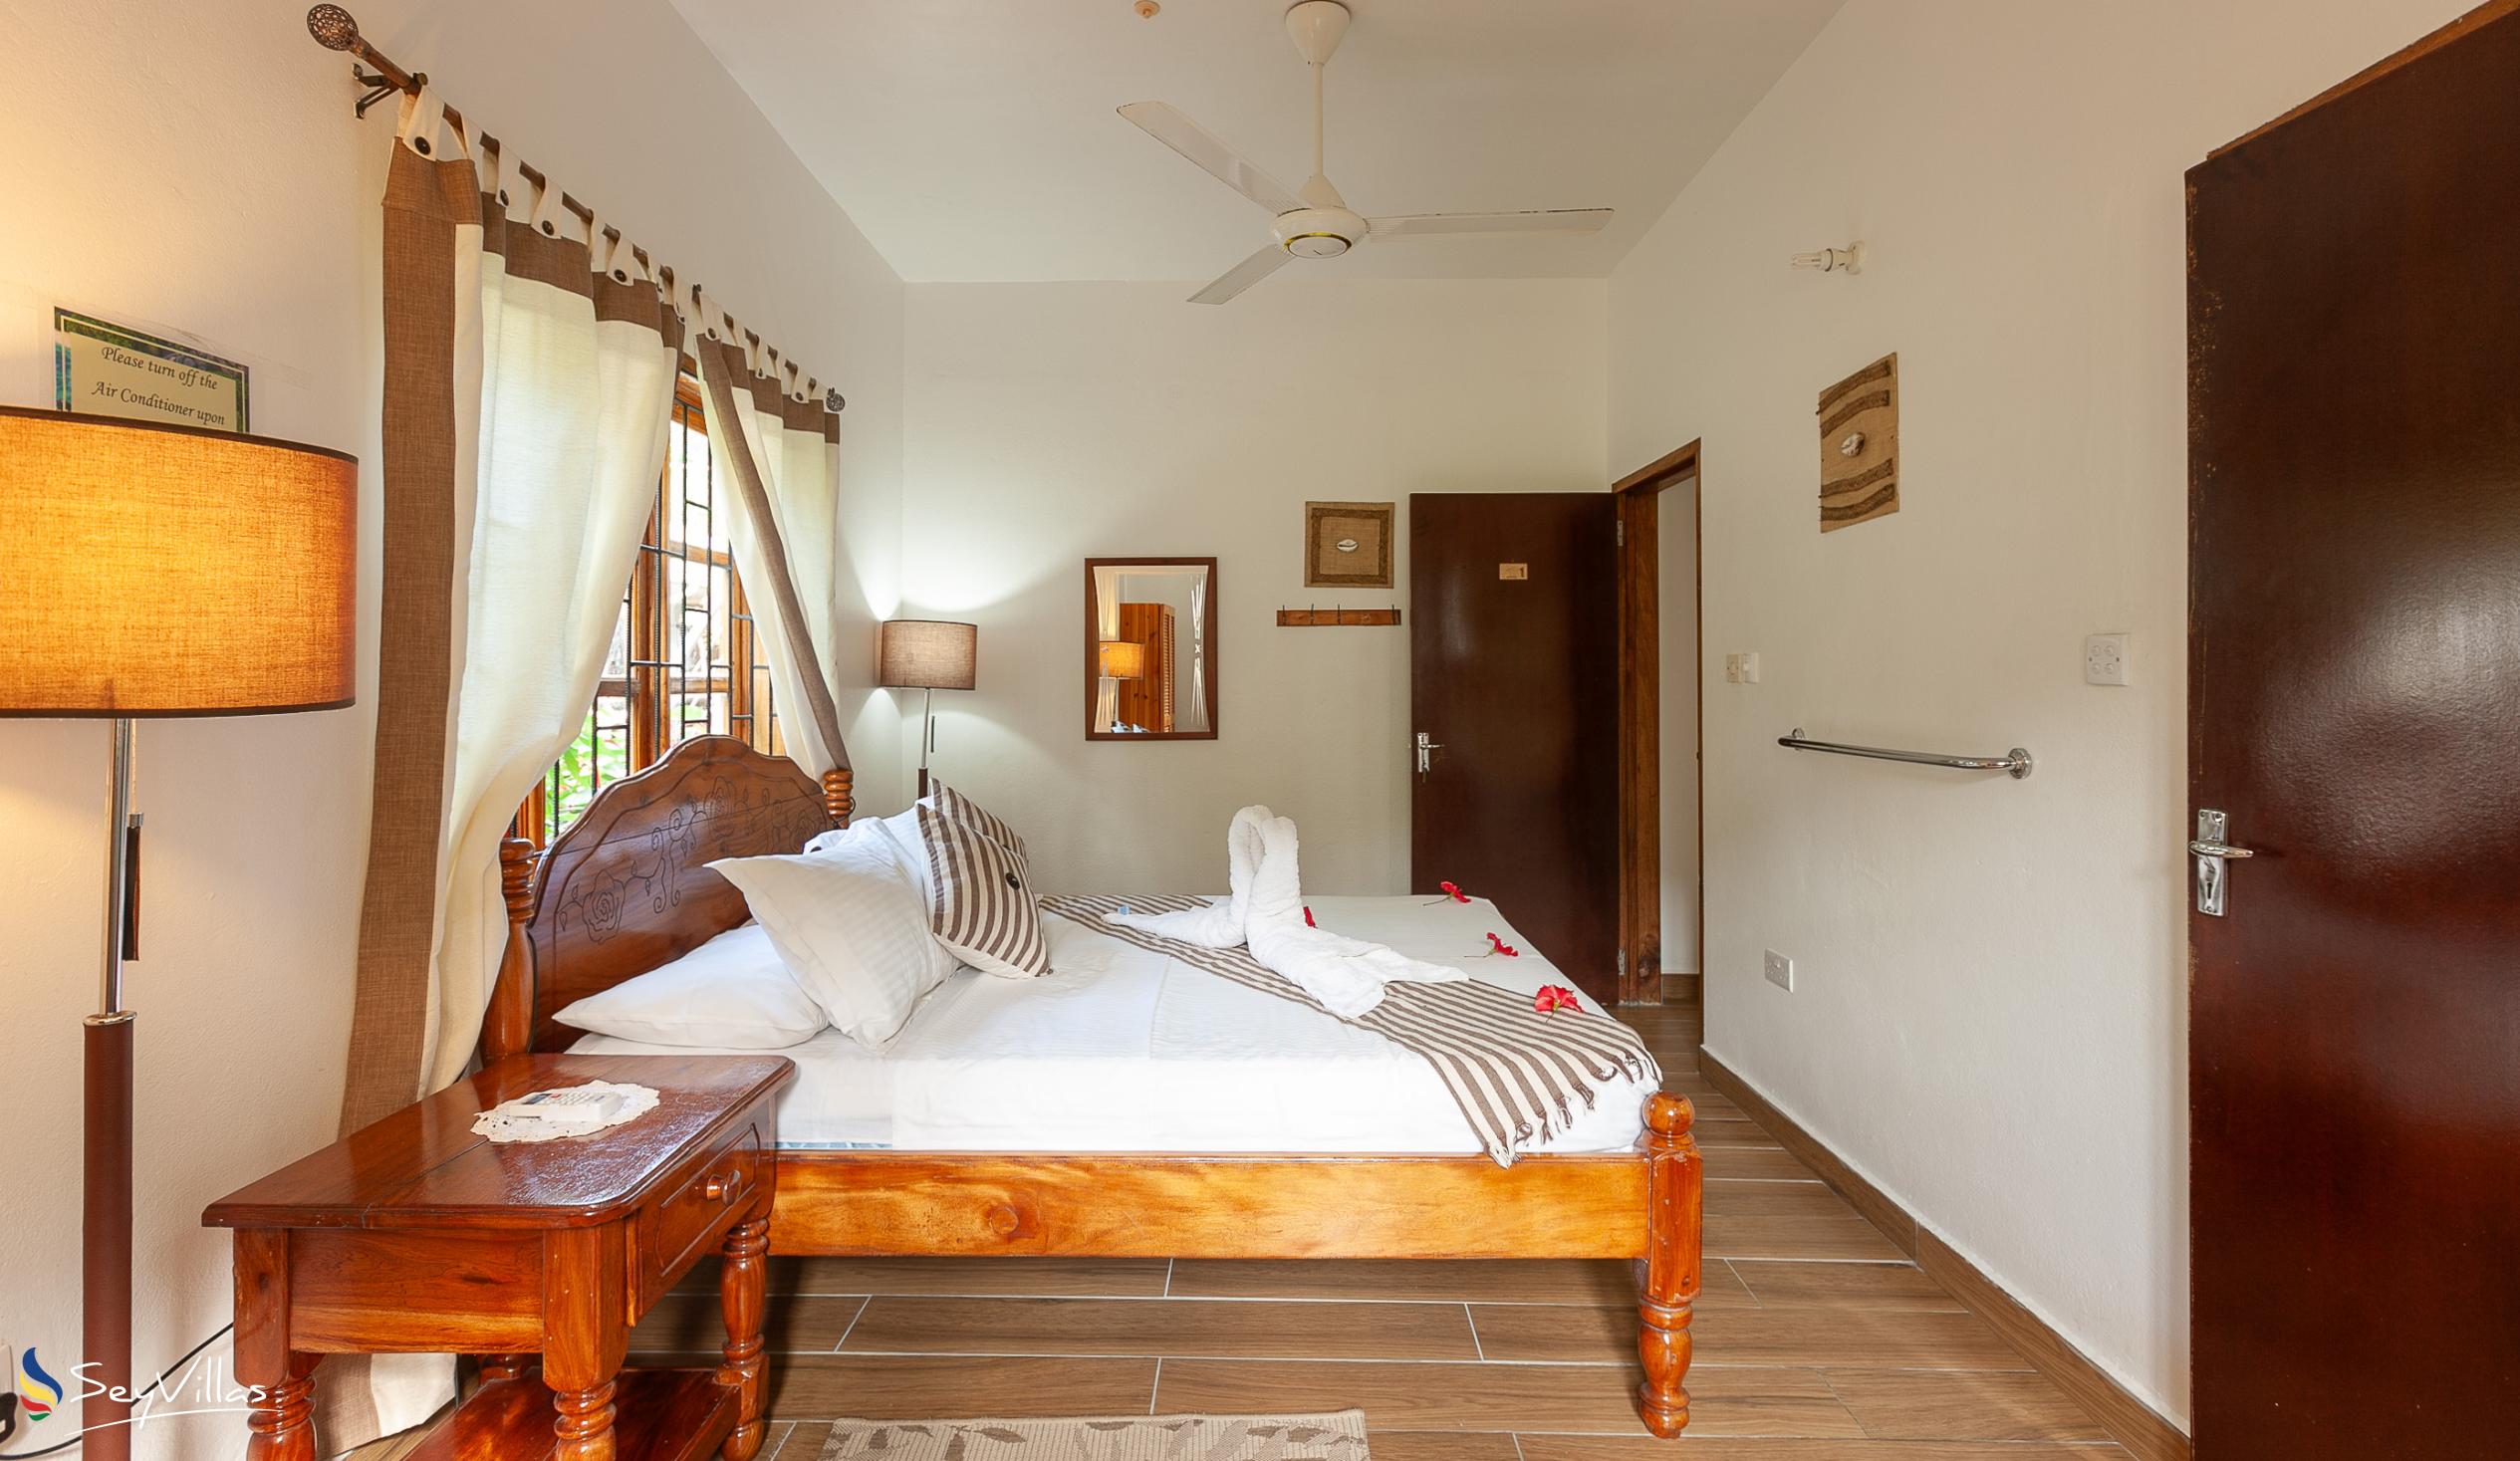 Photo 70: Tannette's Villa - Standard Double Room - La Digue (Seychelles)